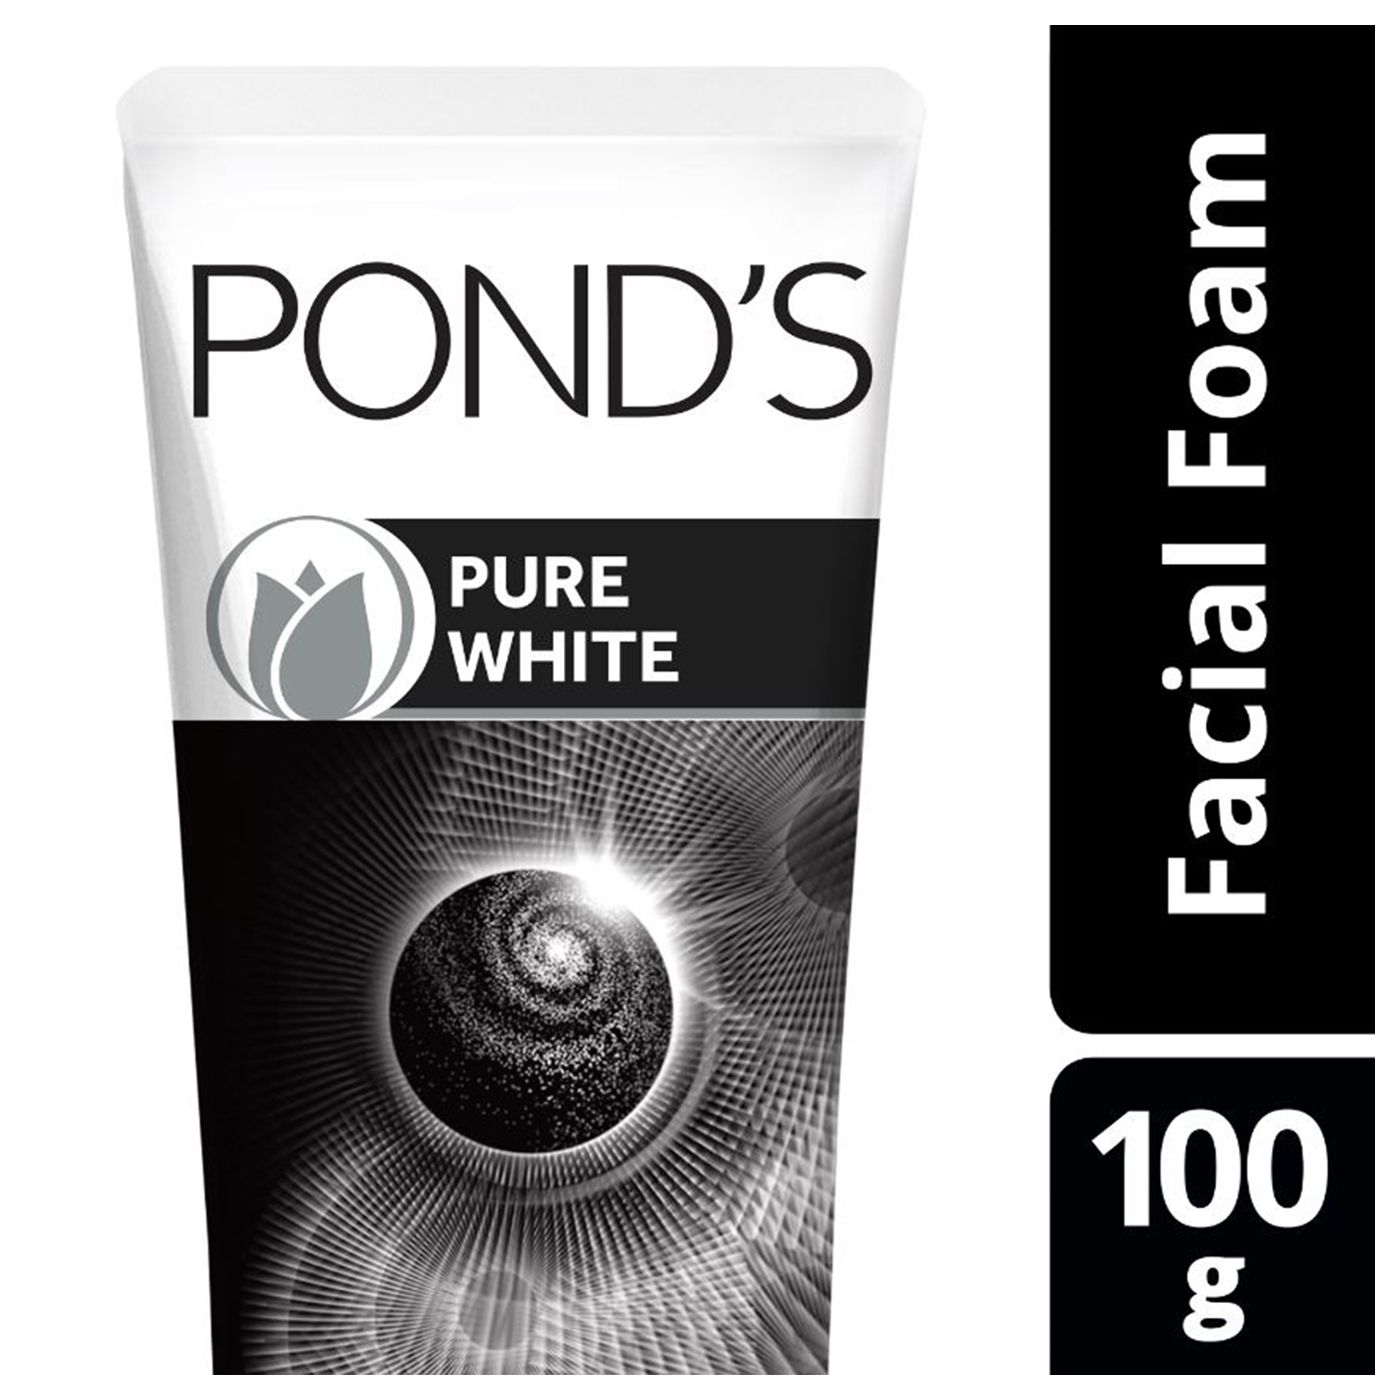 Pond's Pure White Facial Foam 100g - 1